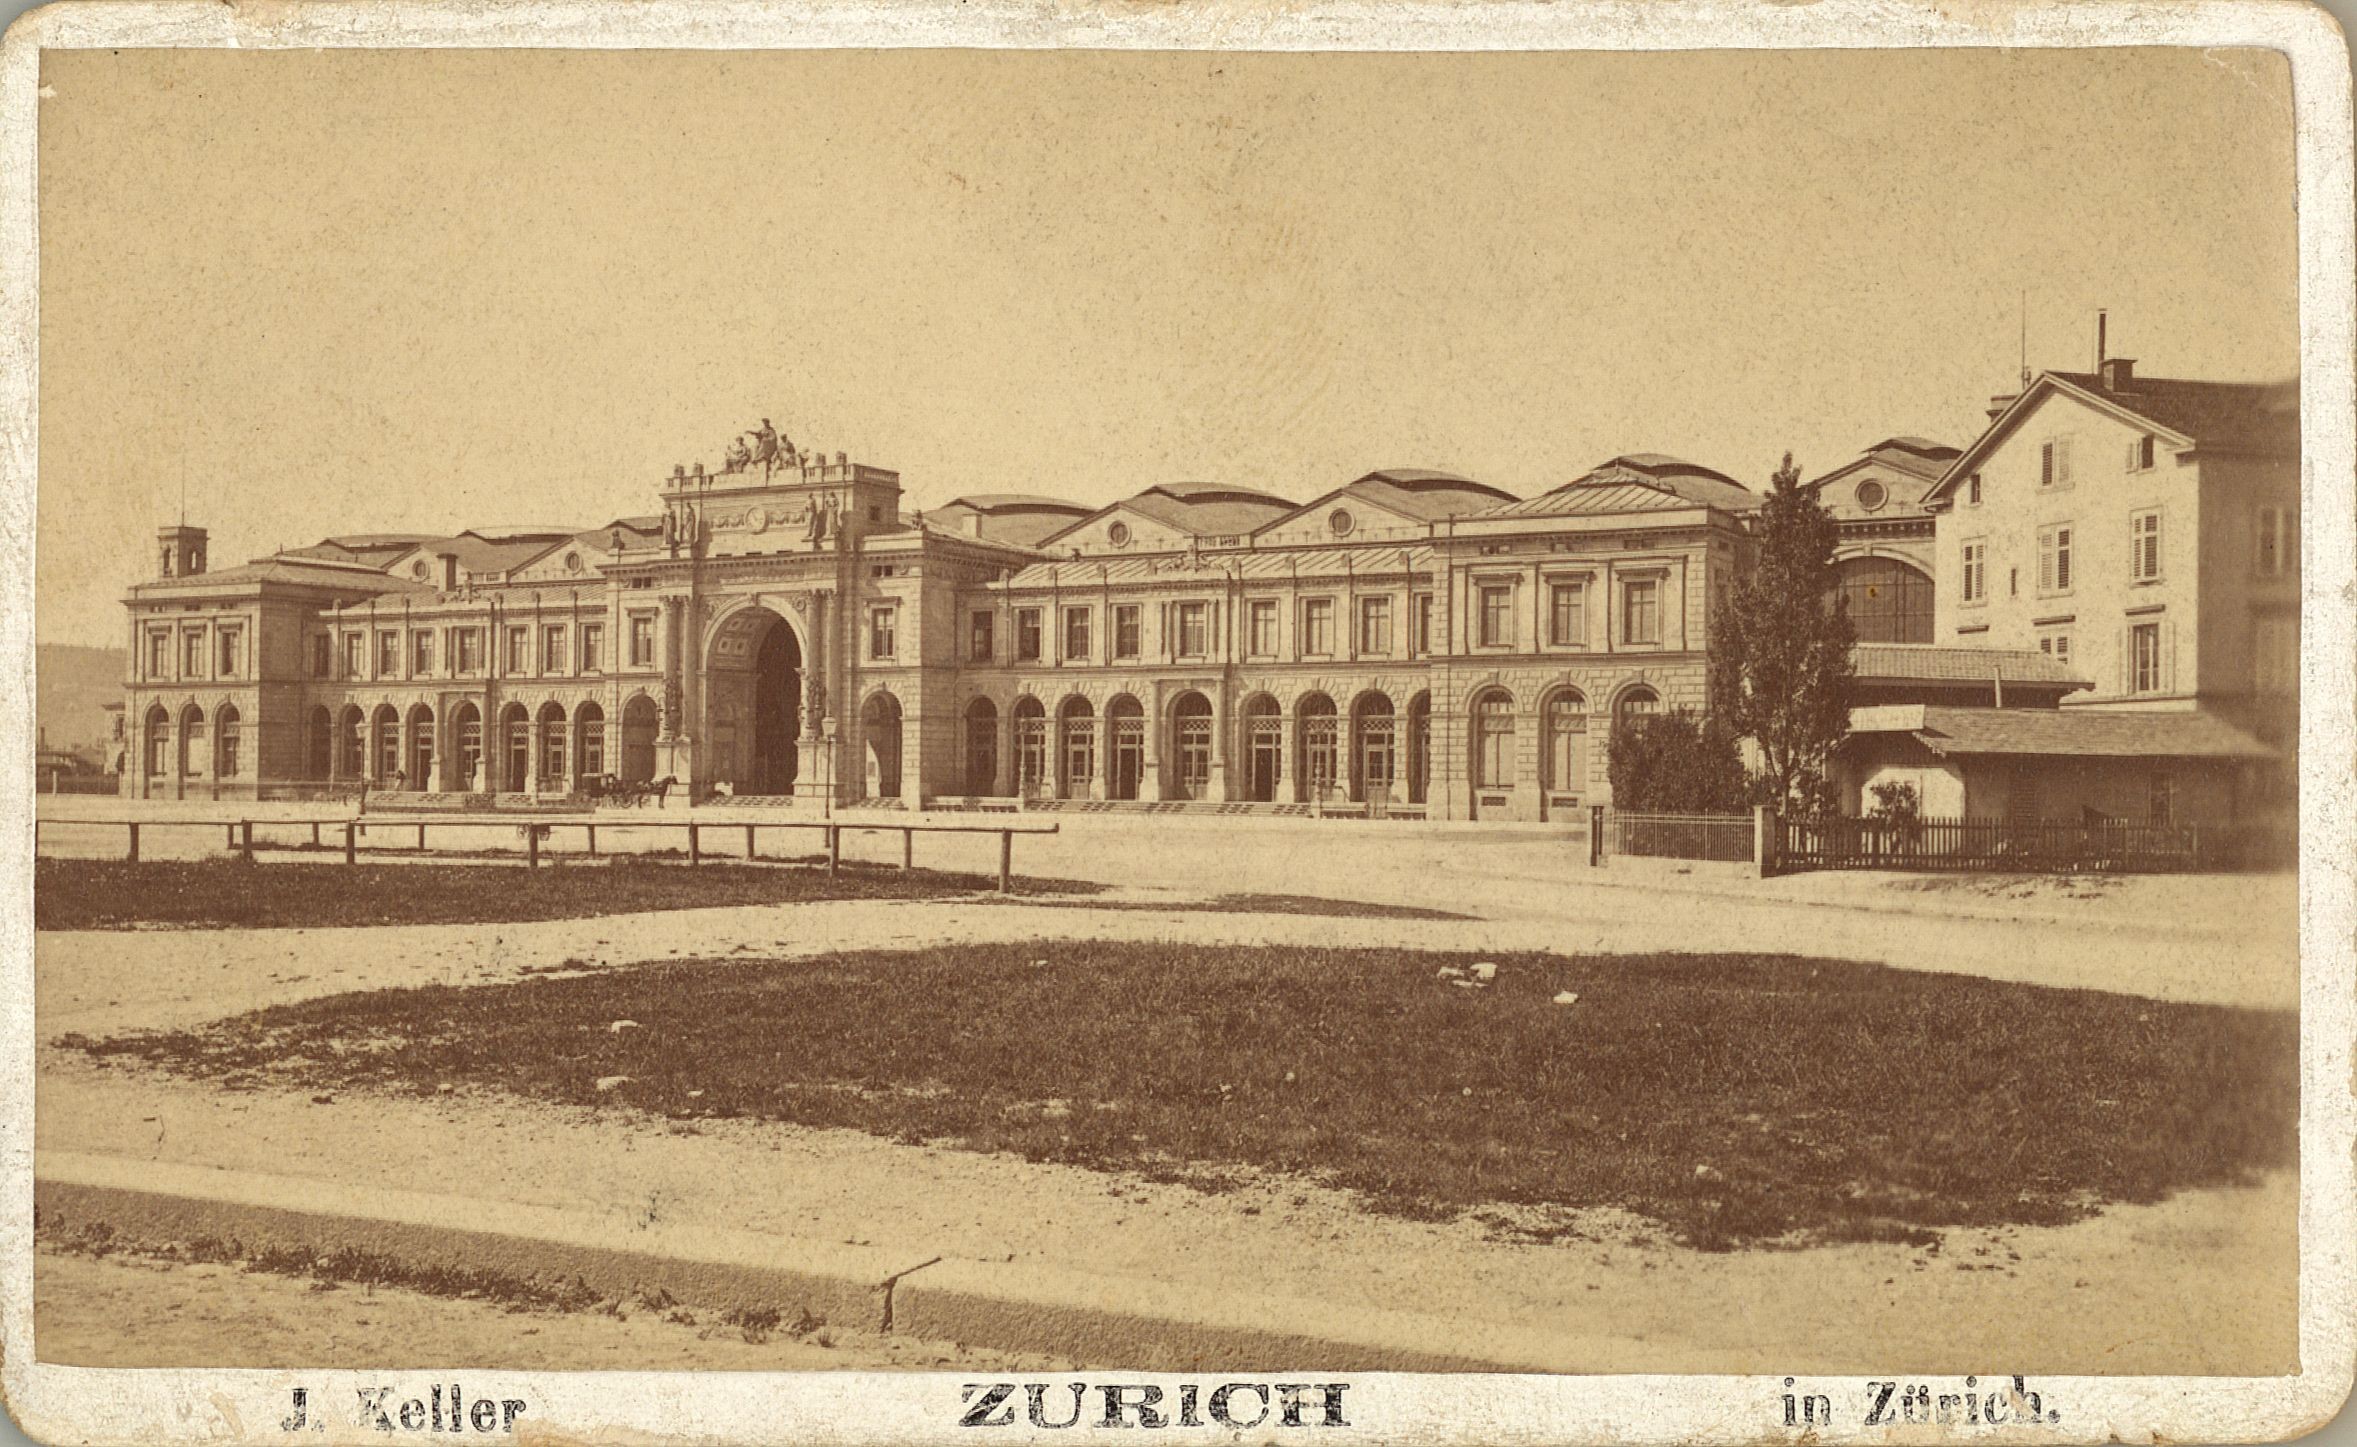 Zwischen 1870 und 1880 sieht der Bahnhofplatz ein wenig leer und trostlos aus. Noch fehlen das Alfred-Escher-Denkmal und der Brunnen, die Jahre später den Platz prägen sollten.